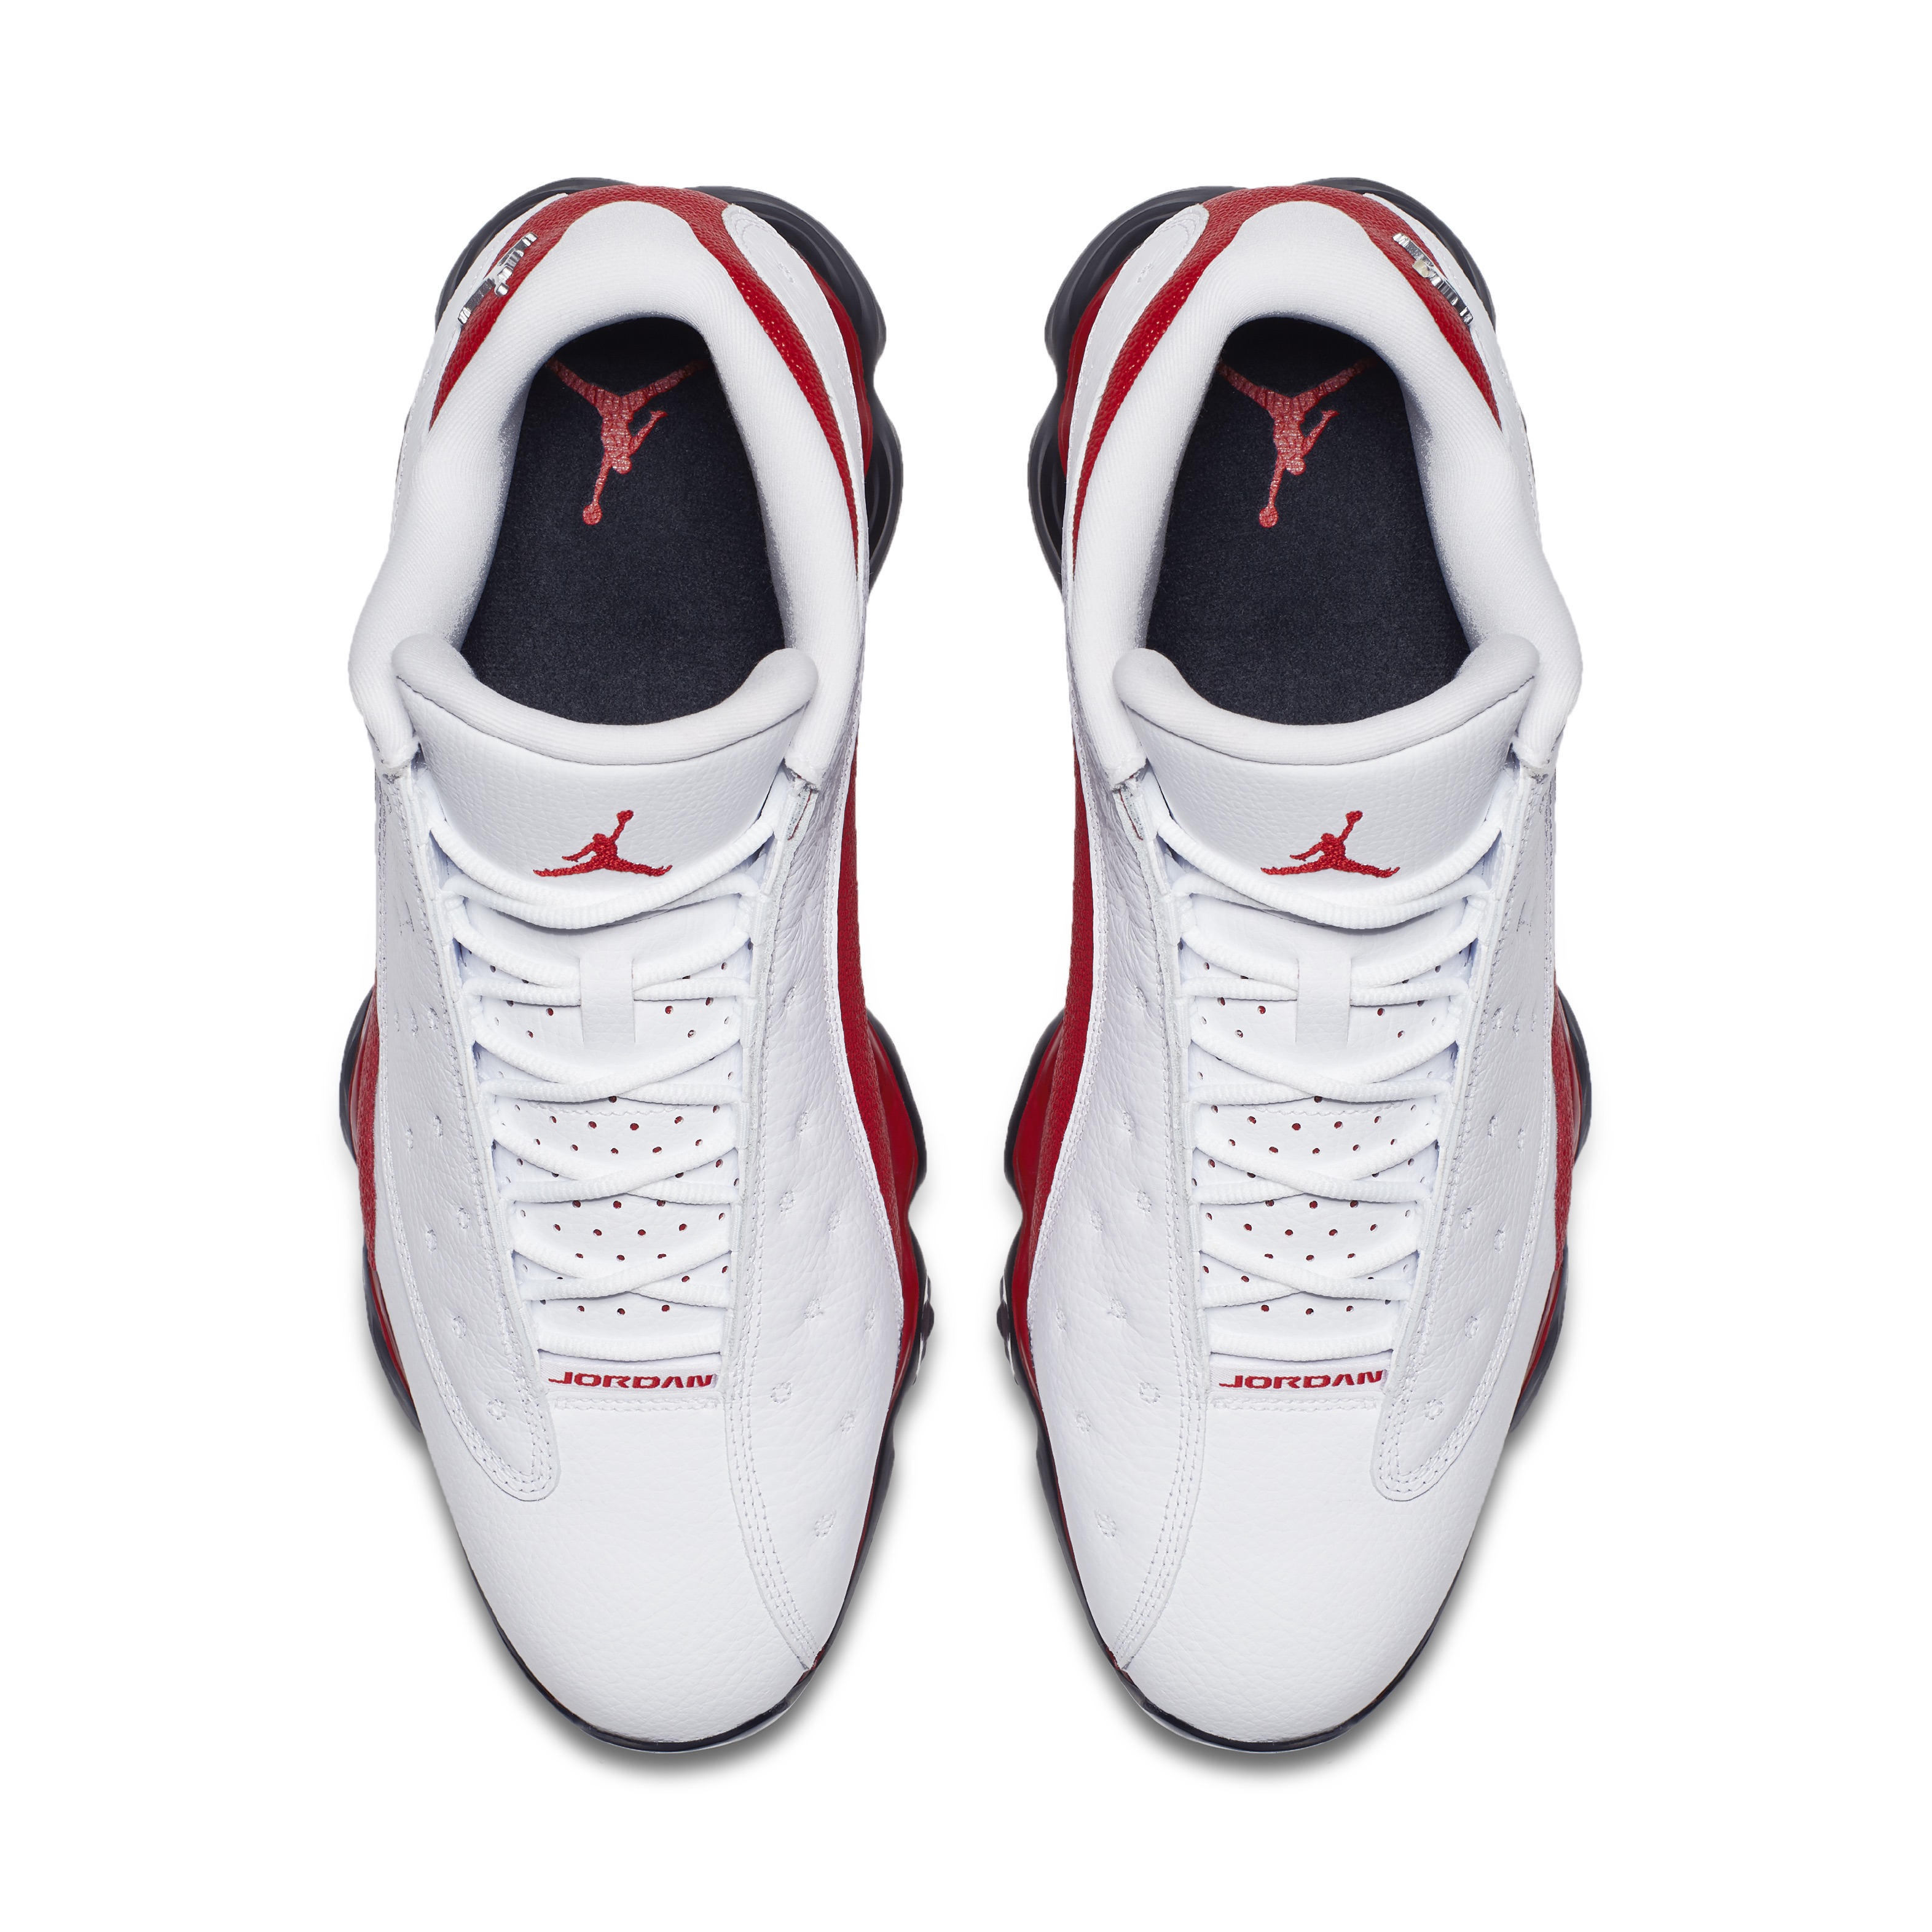 PREVIEW: Nike Air Jordan 13 golf shoes